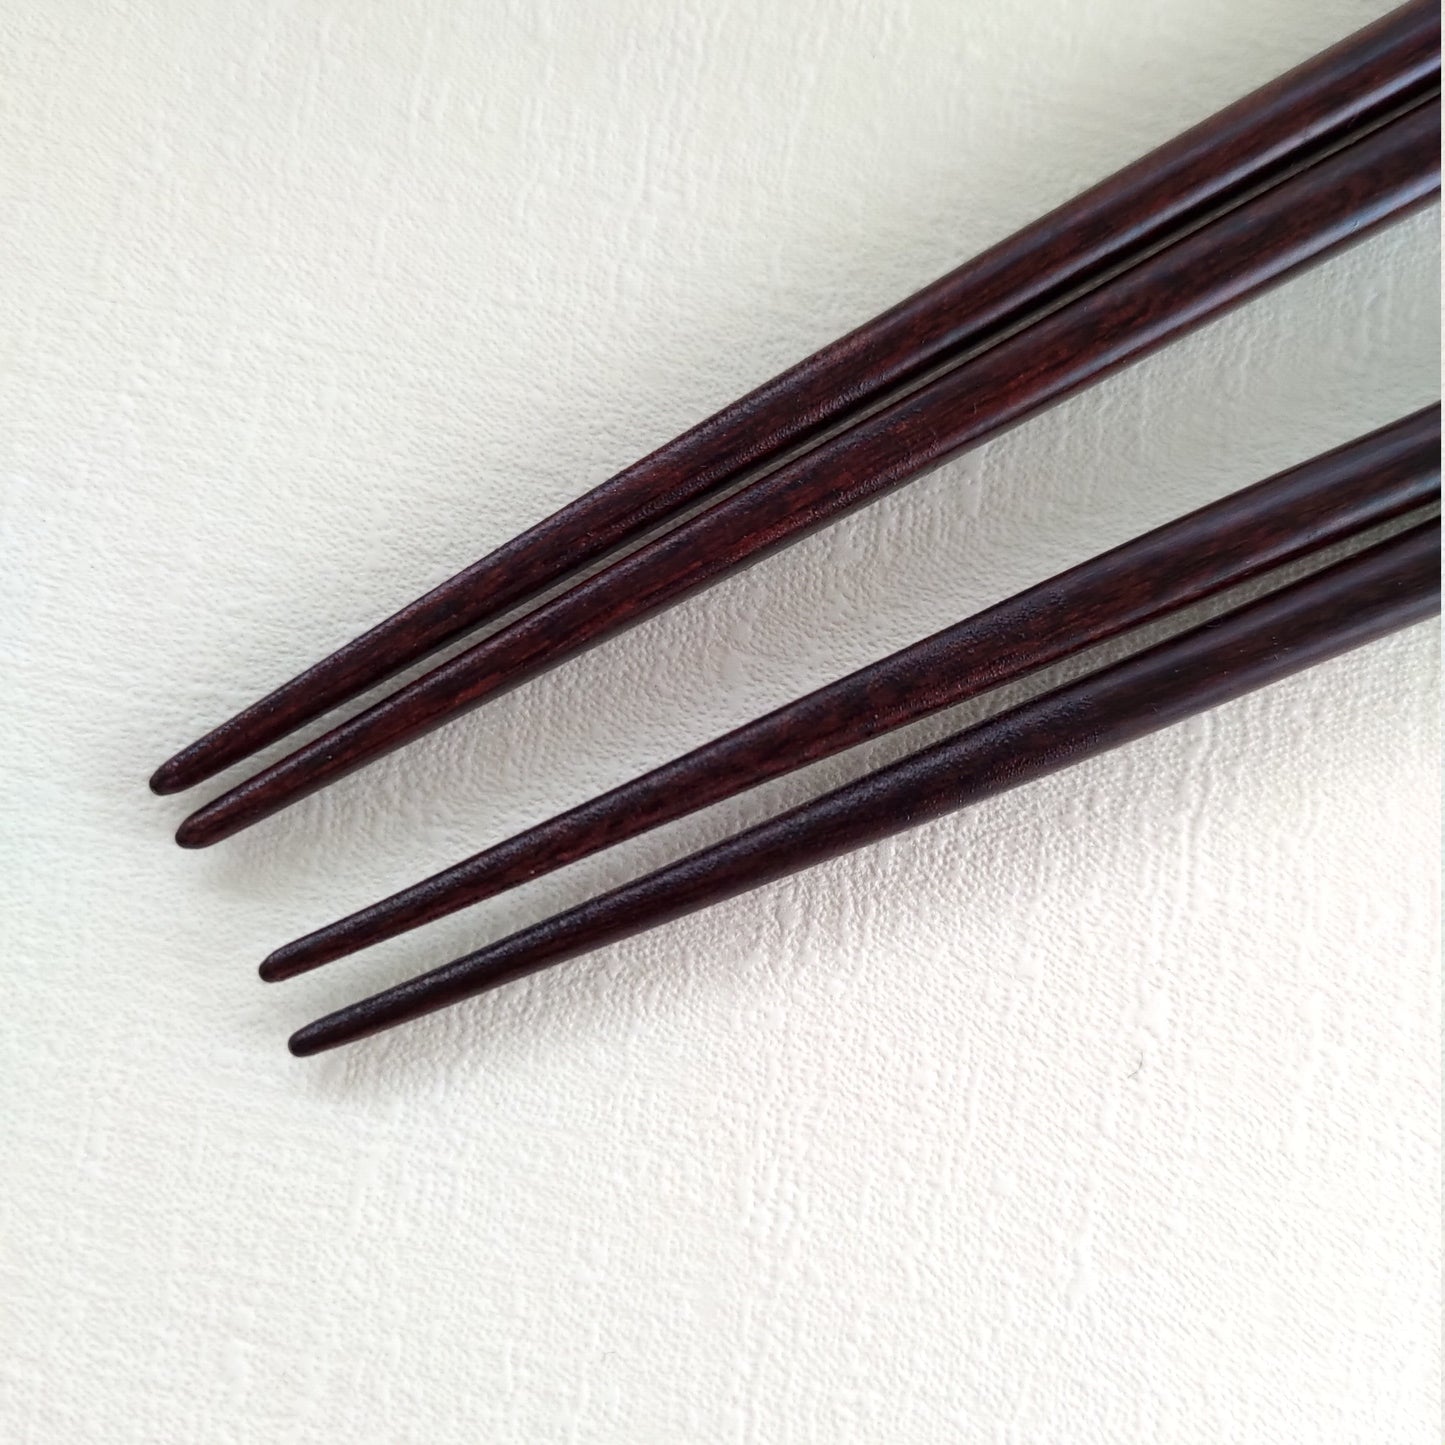 Golden spot Japanese chopsticks gray pink - DOUBLE PAIR